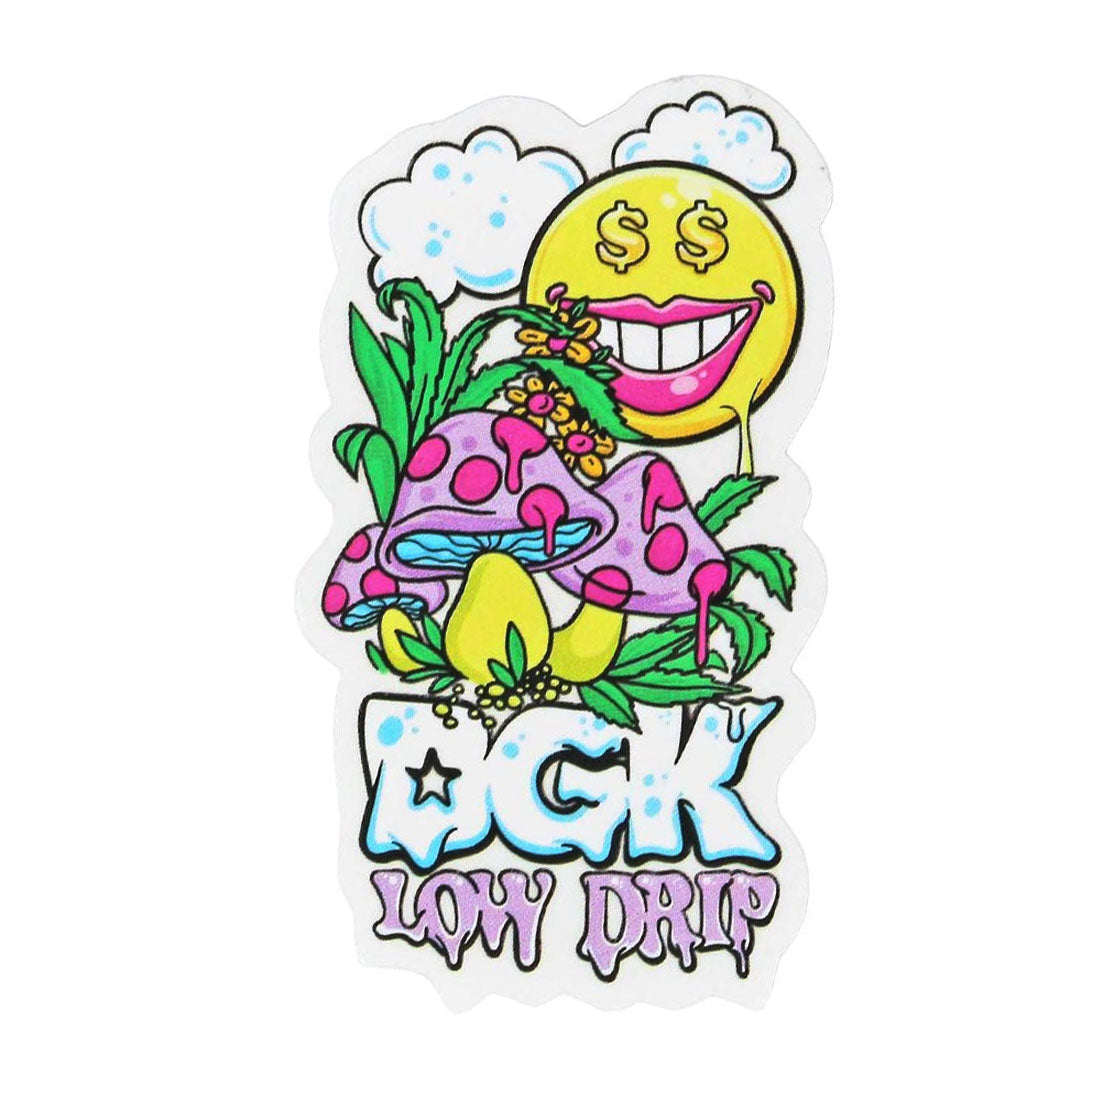 DGK Low Drip Sticker Stickers